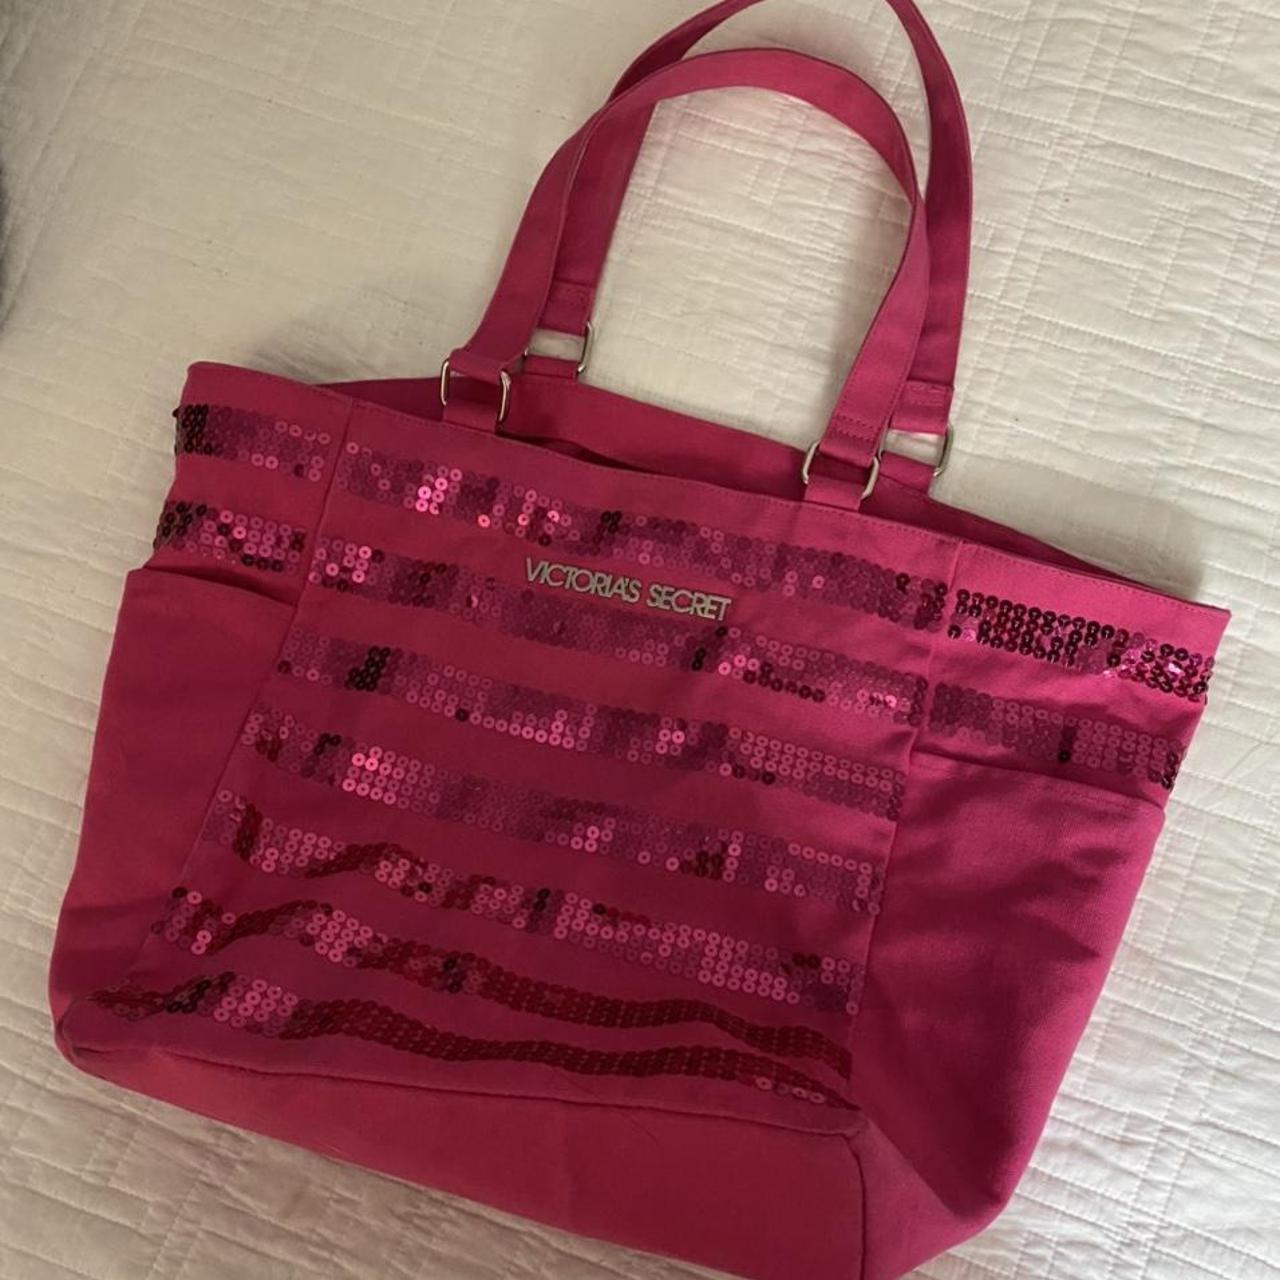 New lot Victoria Secret Frame & Make up Bag - household items - by owner -  housewares sale - craigslist